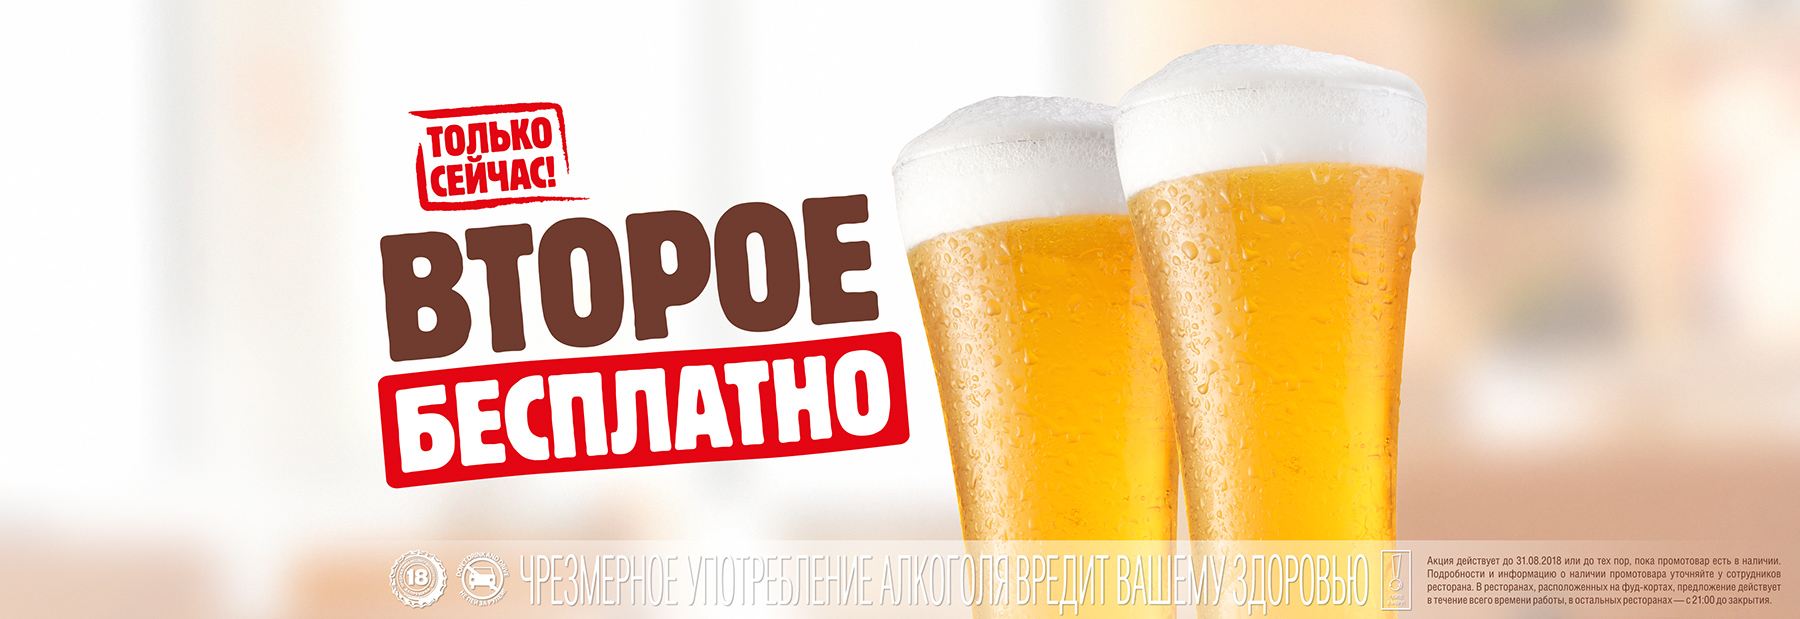 Рекламная акция пива Tuborg (Туборг) «Второе бесплатно» в сети фастфуда БУРГЕР КИНГ